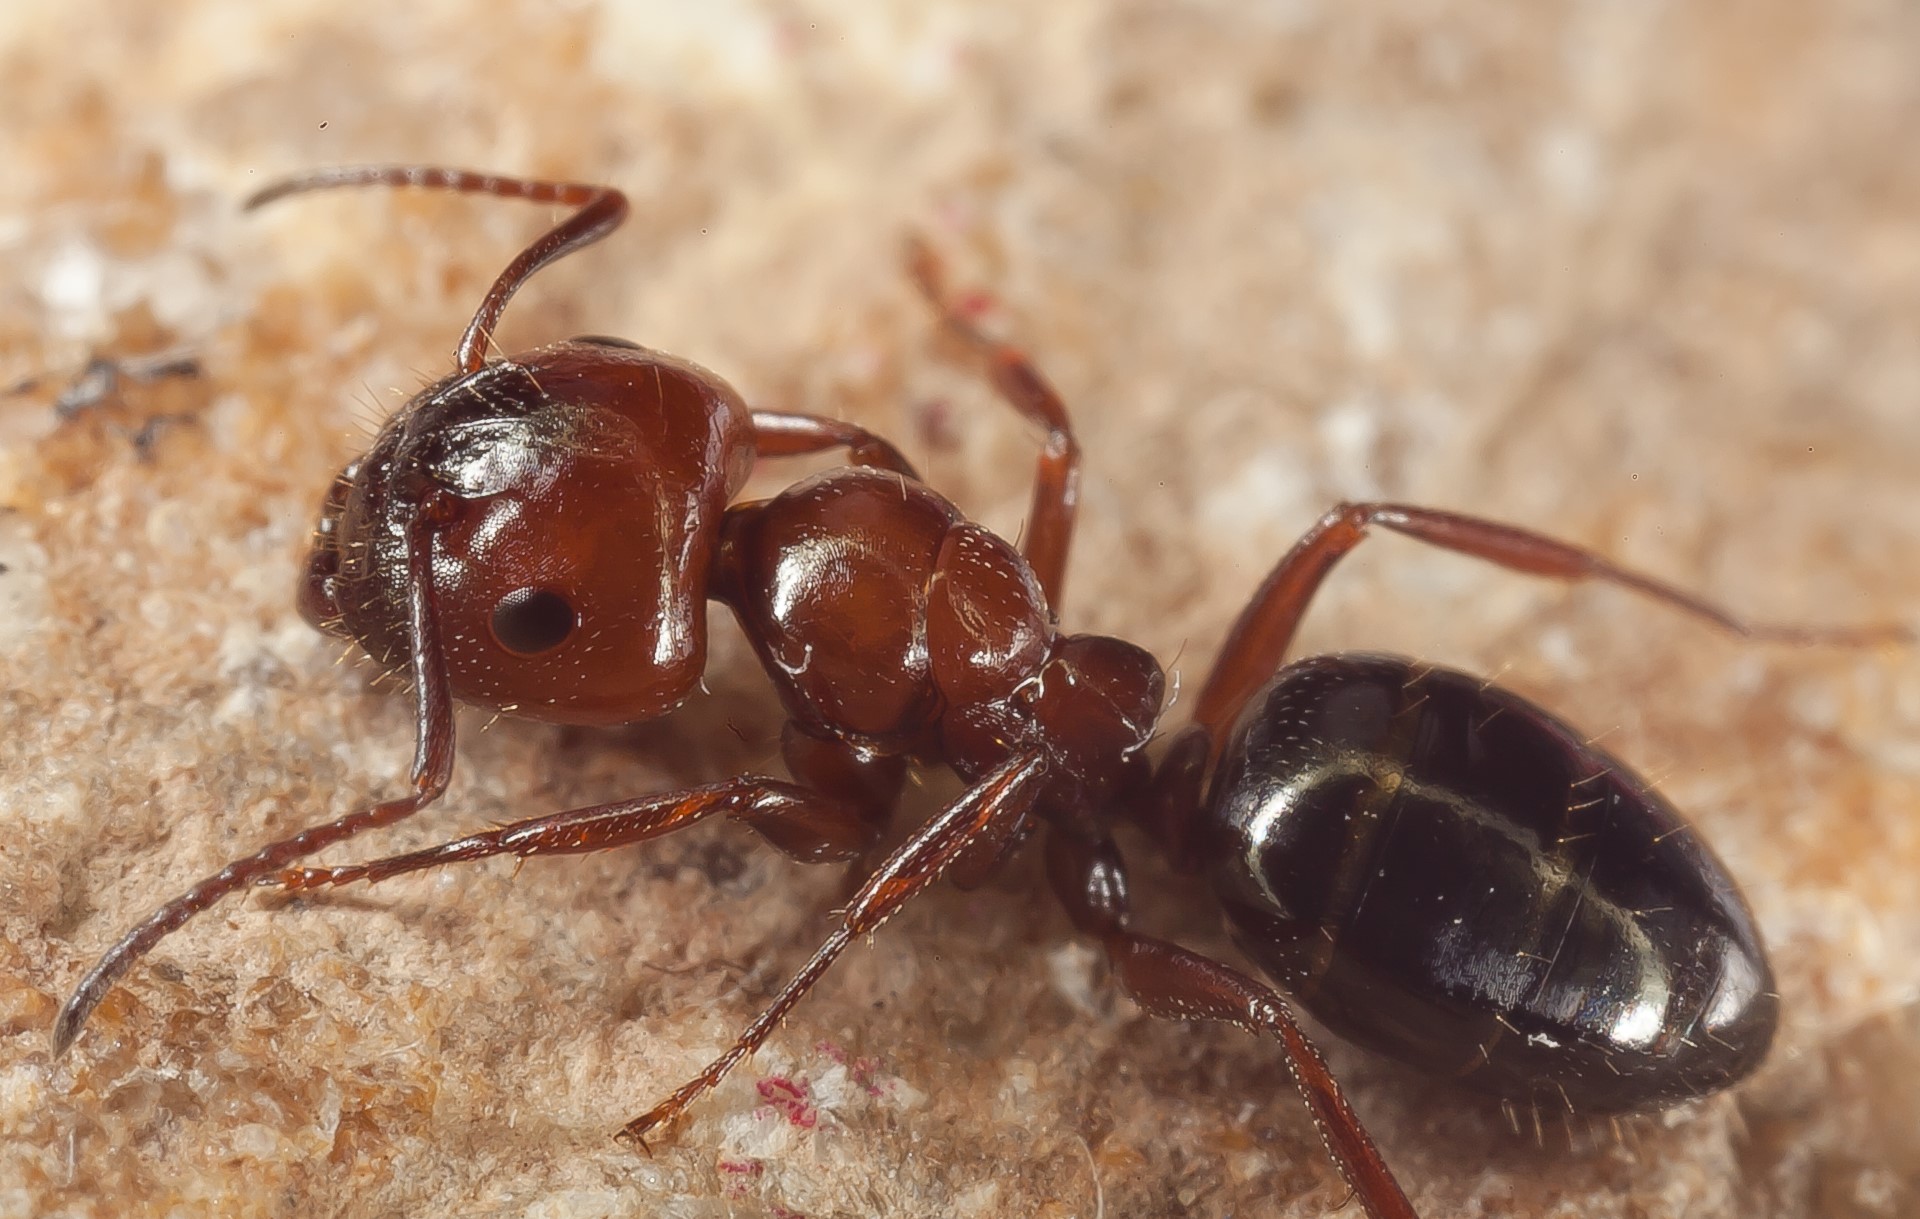  Hormiga Camponotus lateralis. Imagen tomada por Carlos del Pico Pons